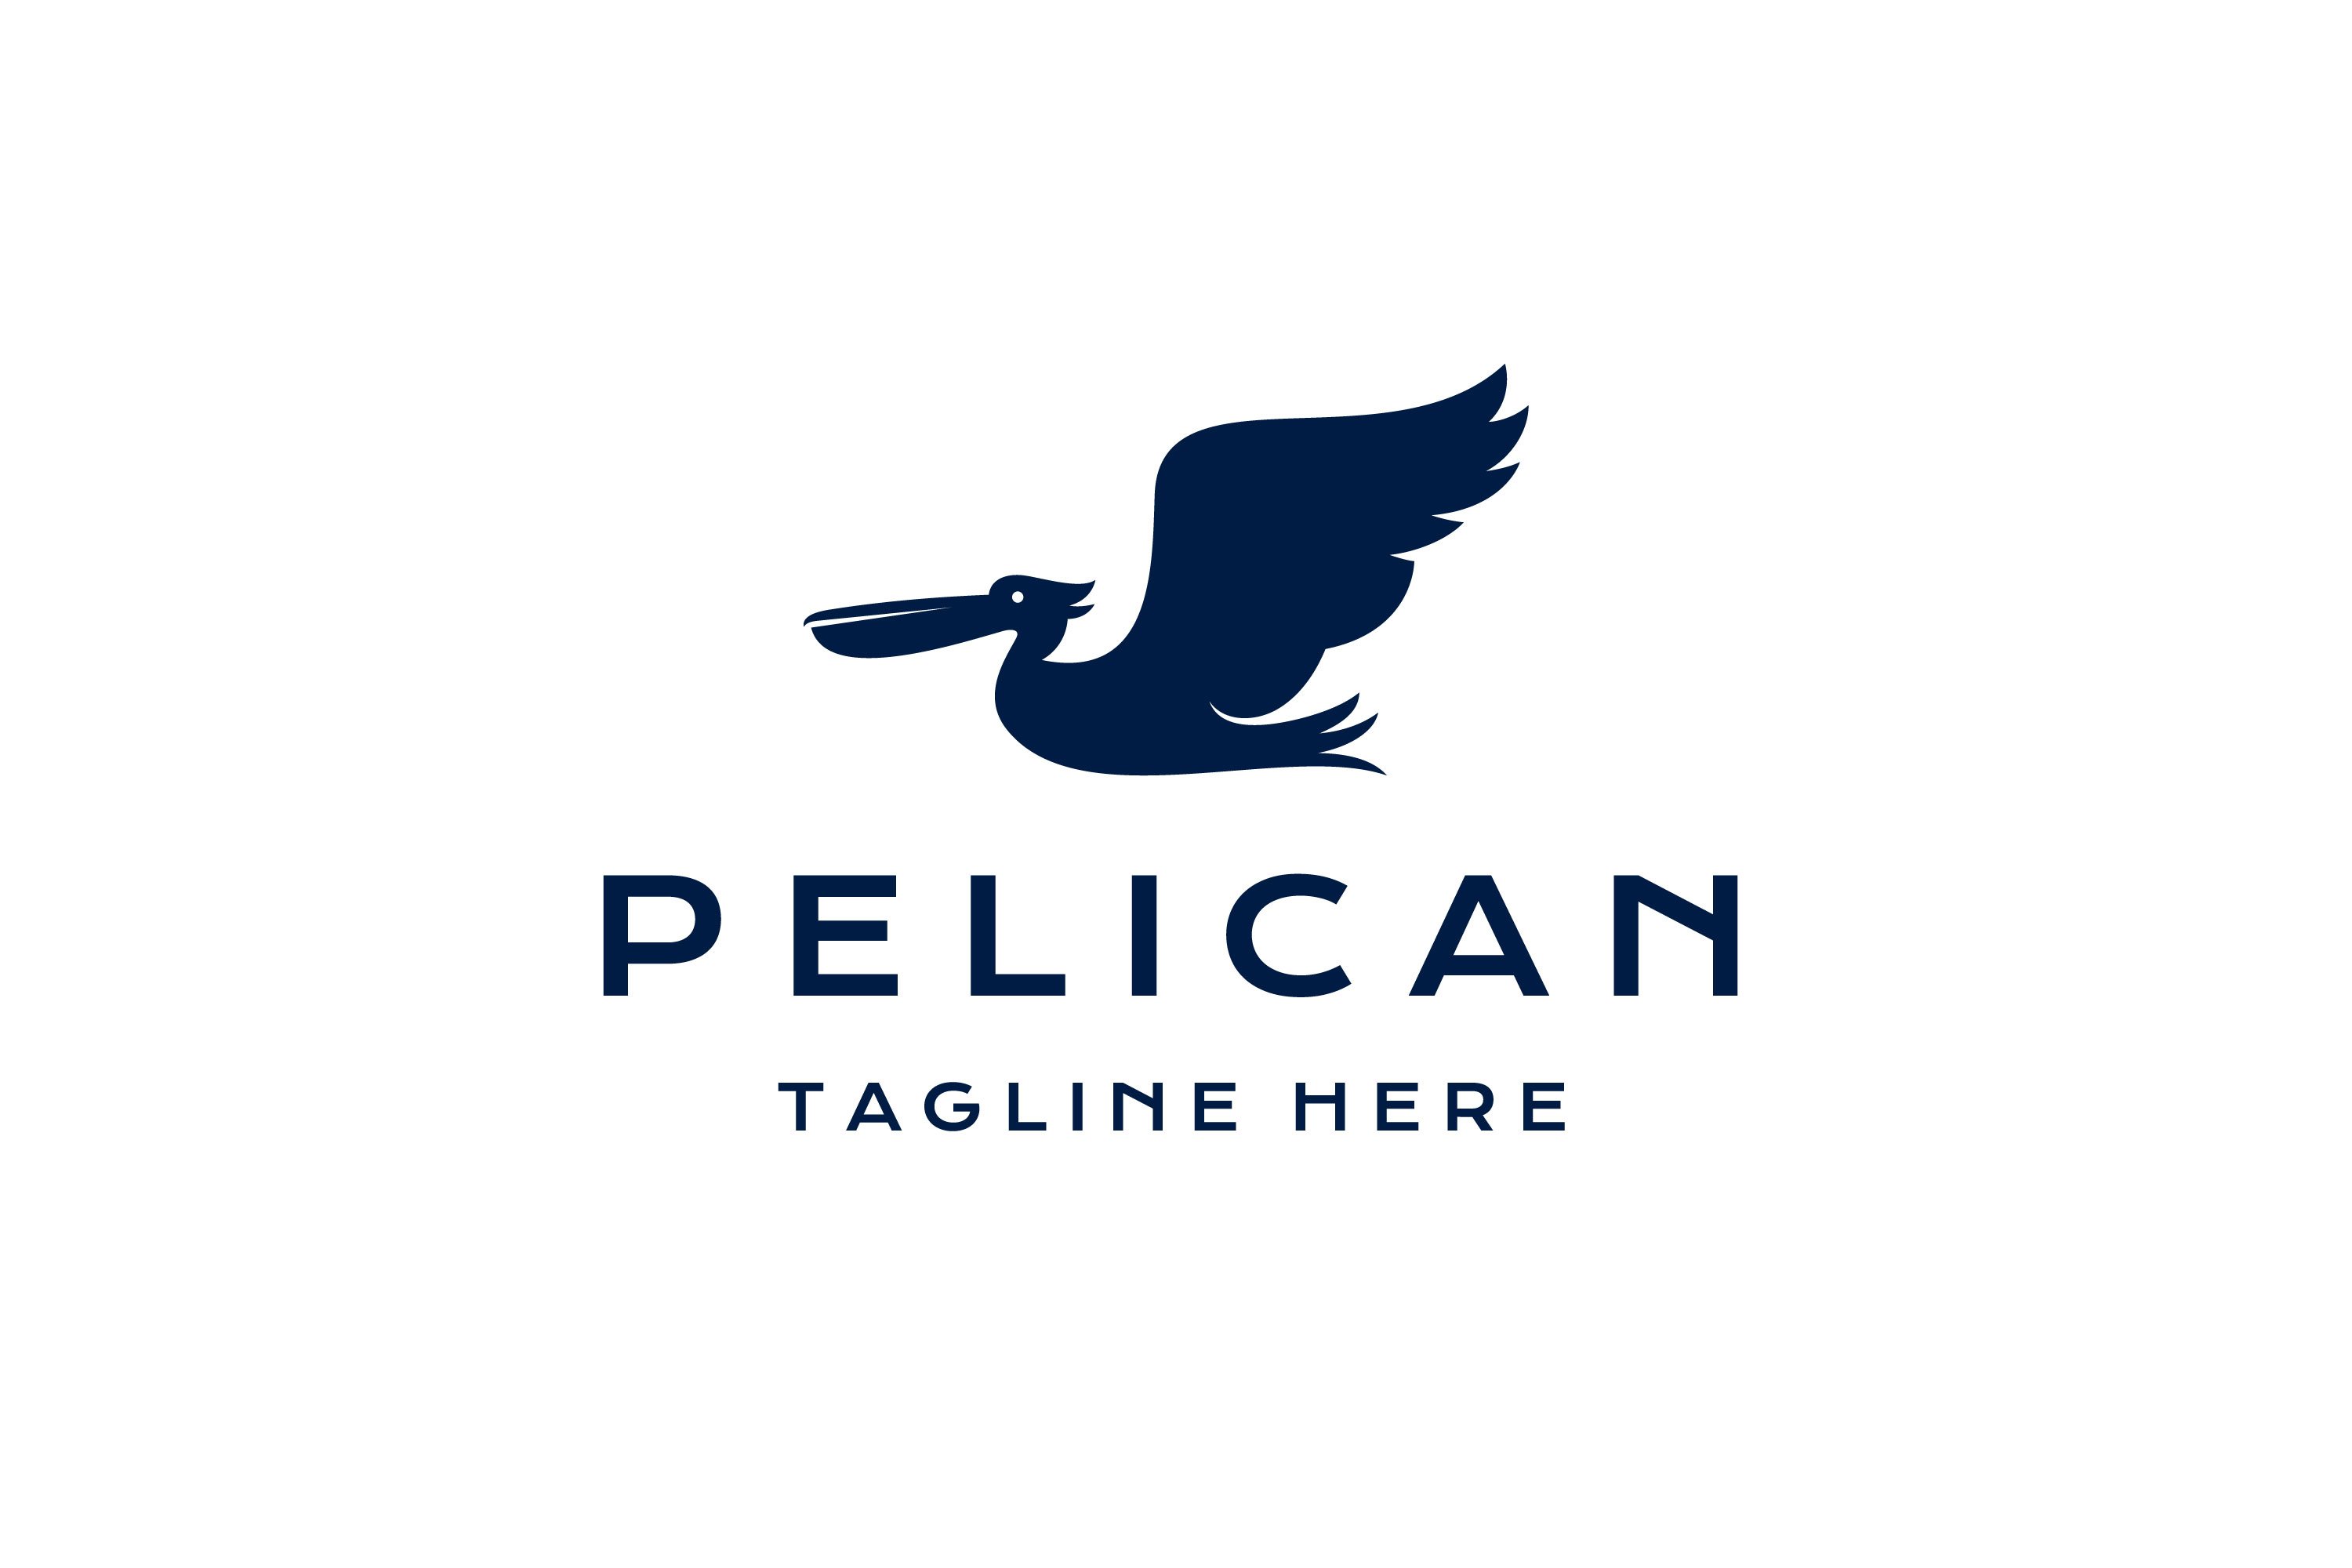 Pelican bird logo design vector cover image.